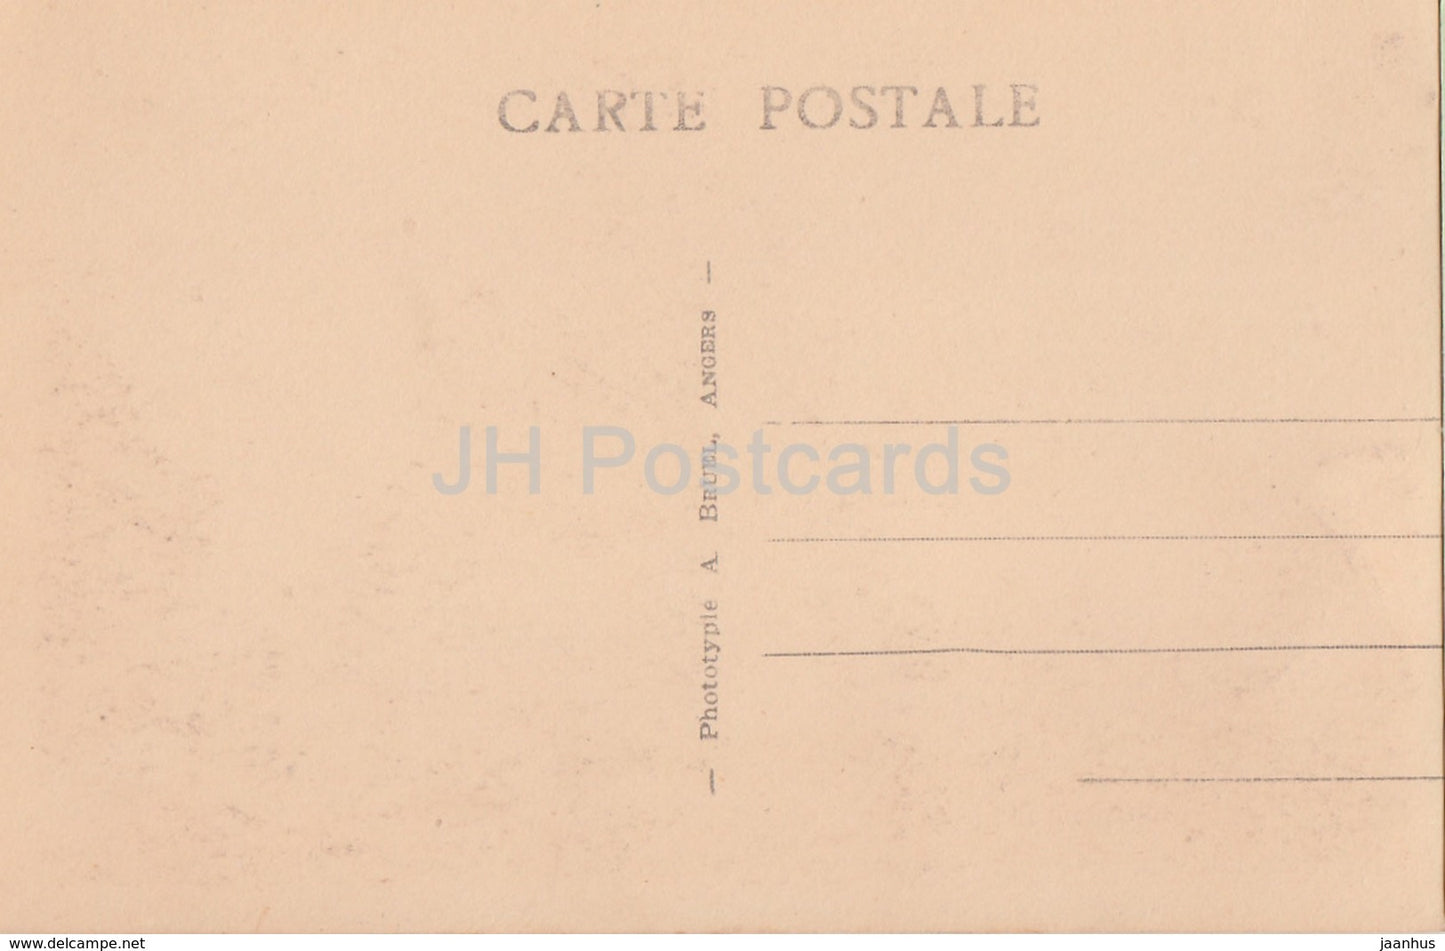 Chinon - Le Chateau - Vue d'Ensemble -  8 - castle - old postcard - France - unused